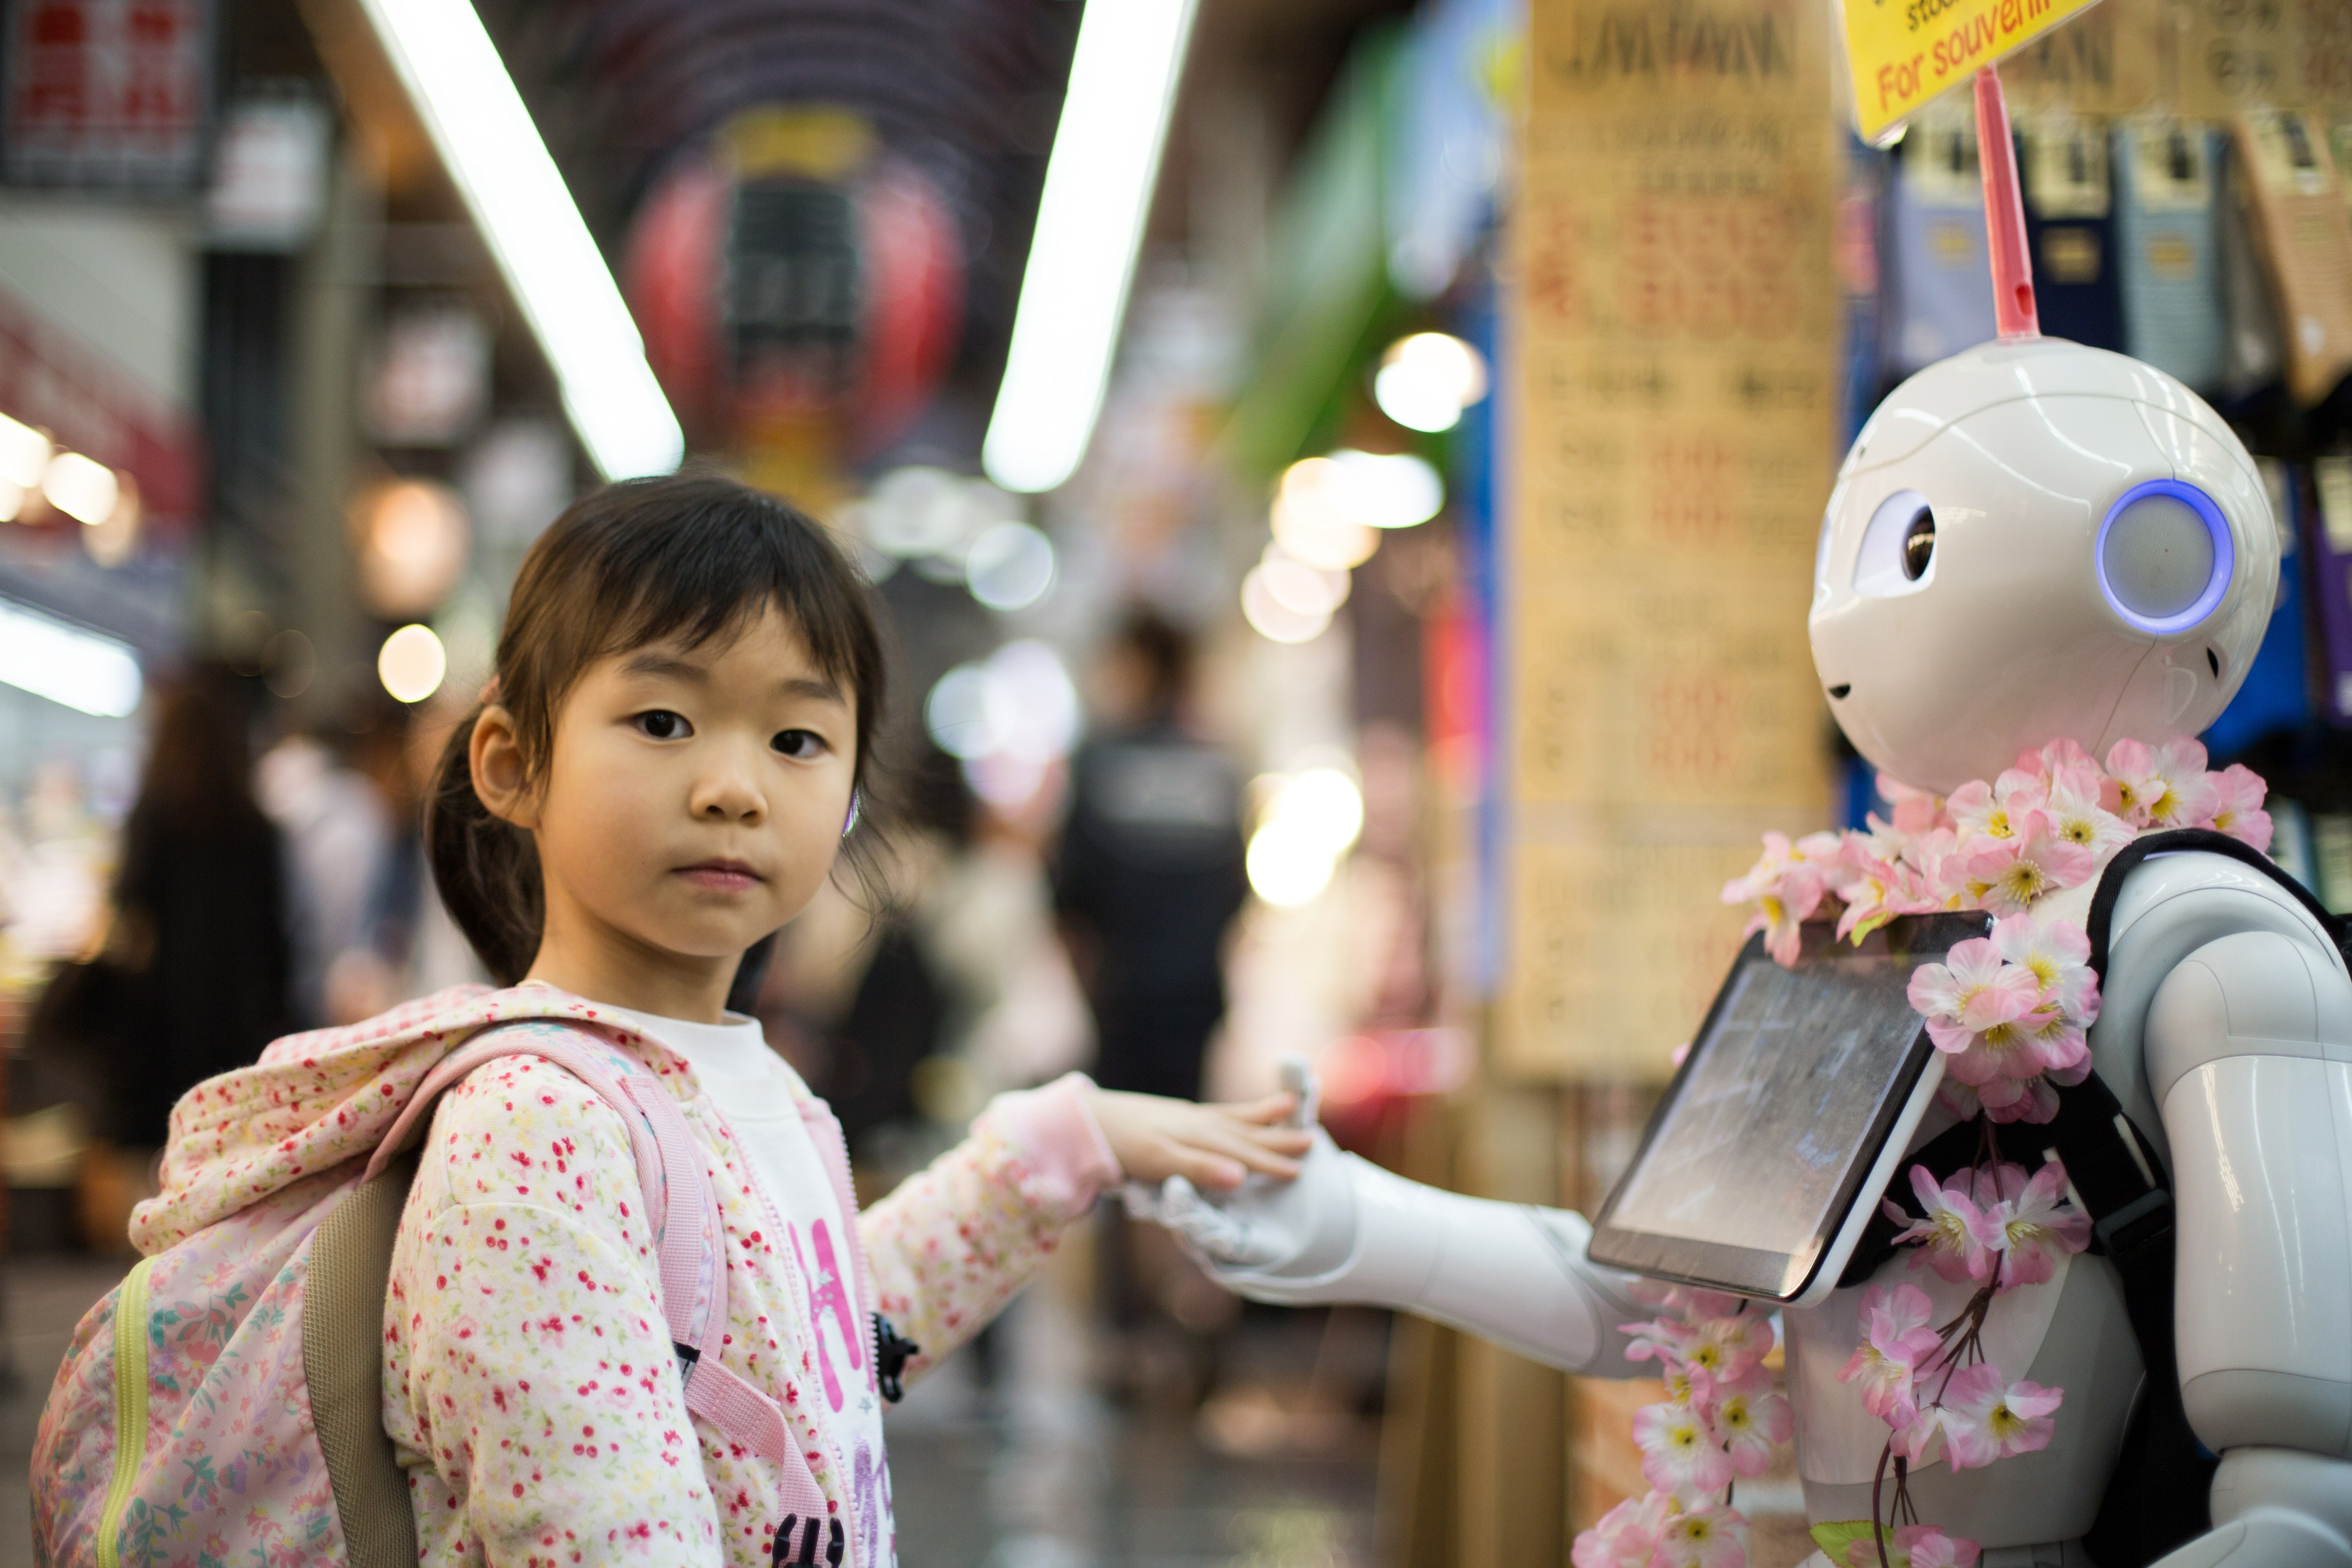 Cute Asian girl holding a robot's hand